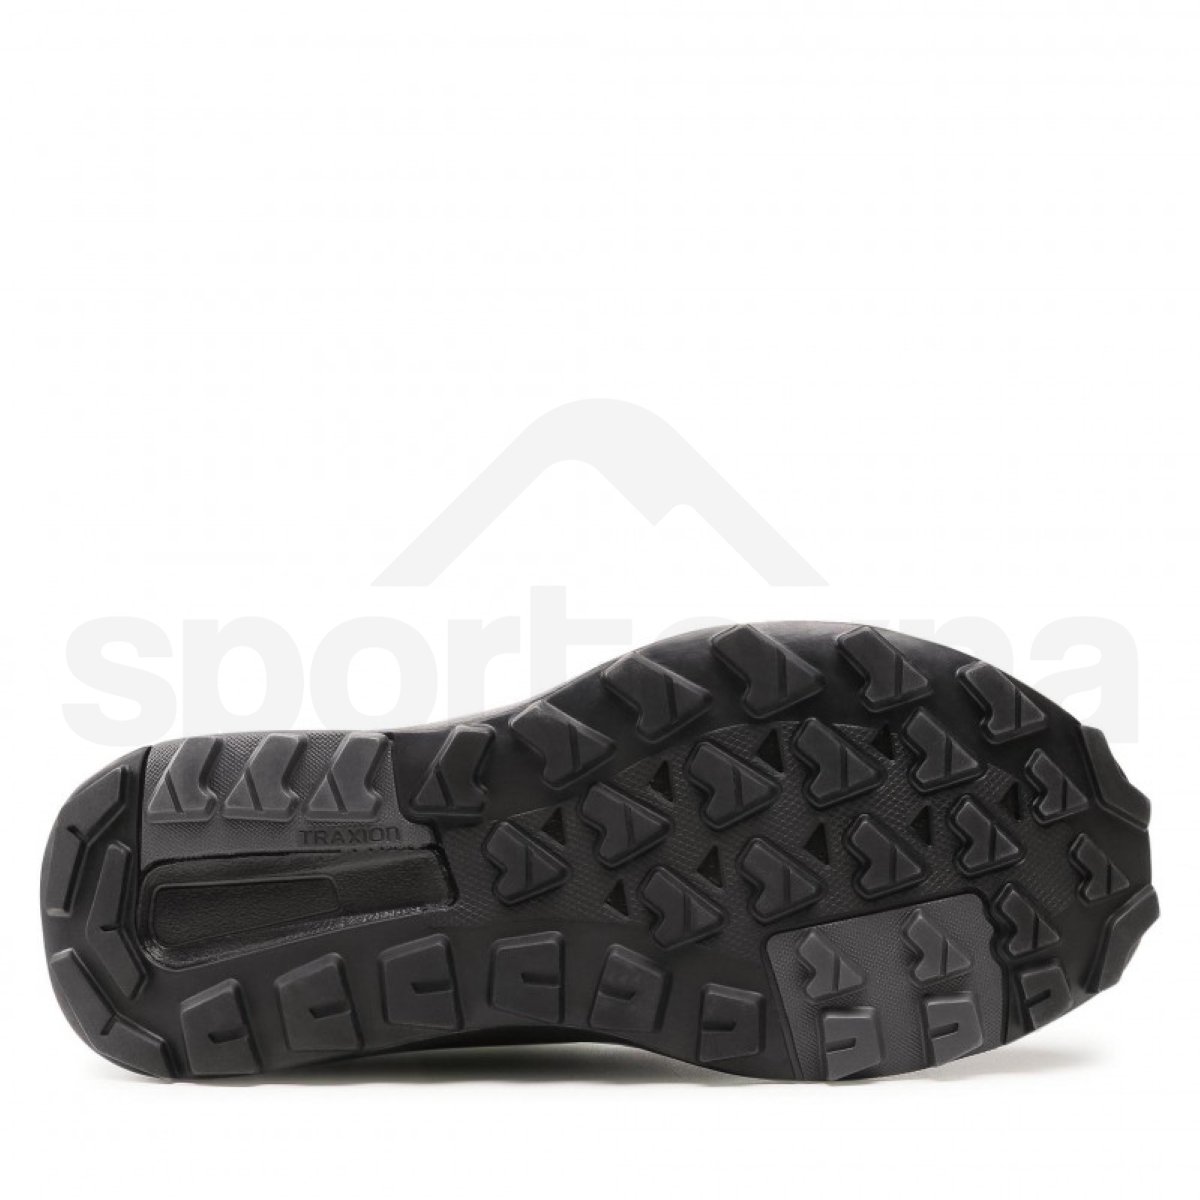 Obuv Adidas Terrex Trailmaker Mid GTX M - černá